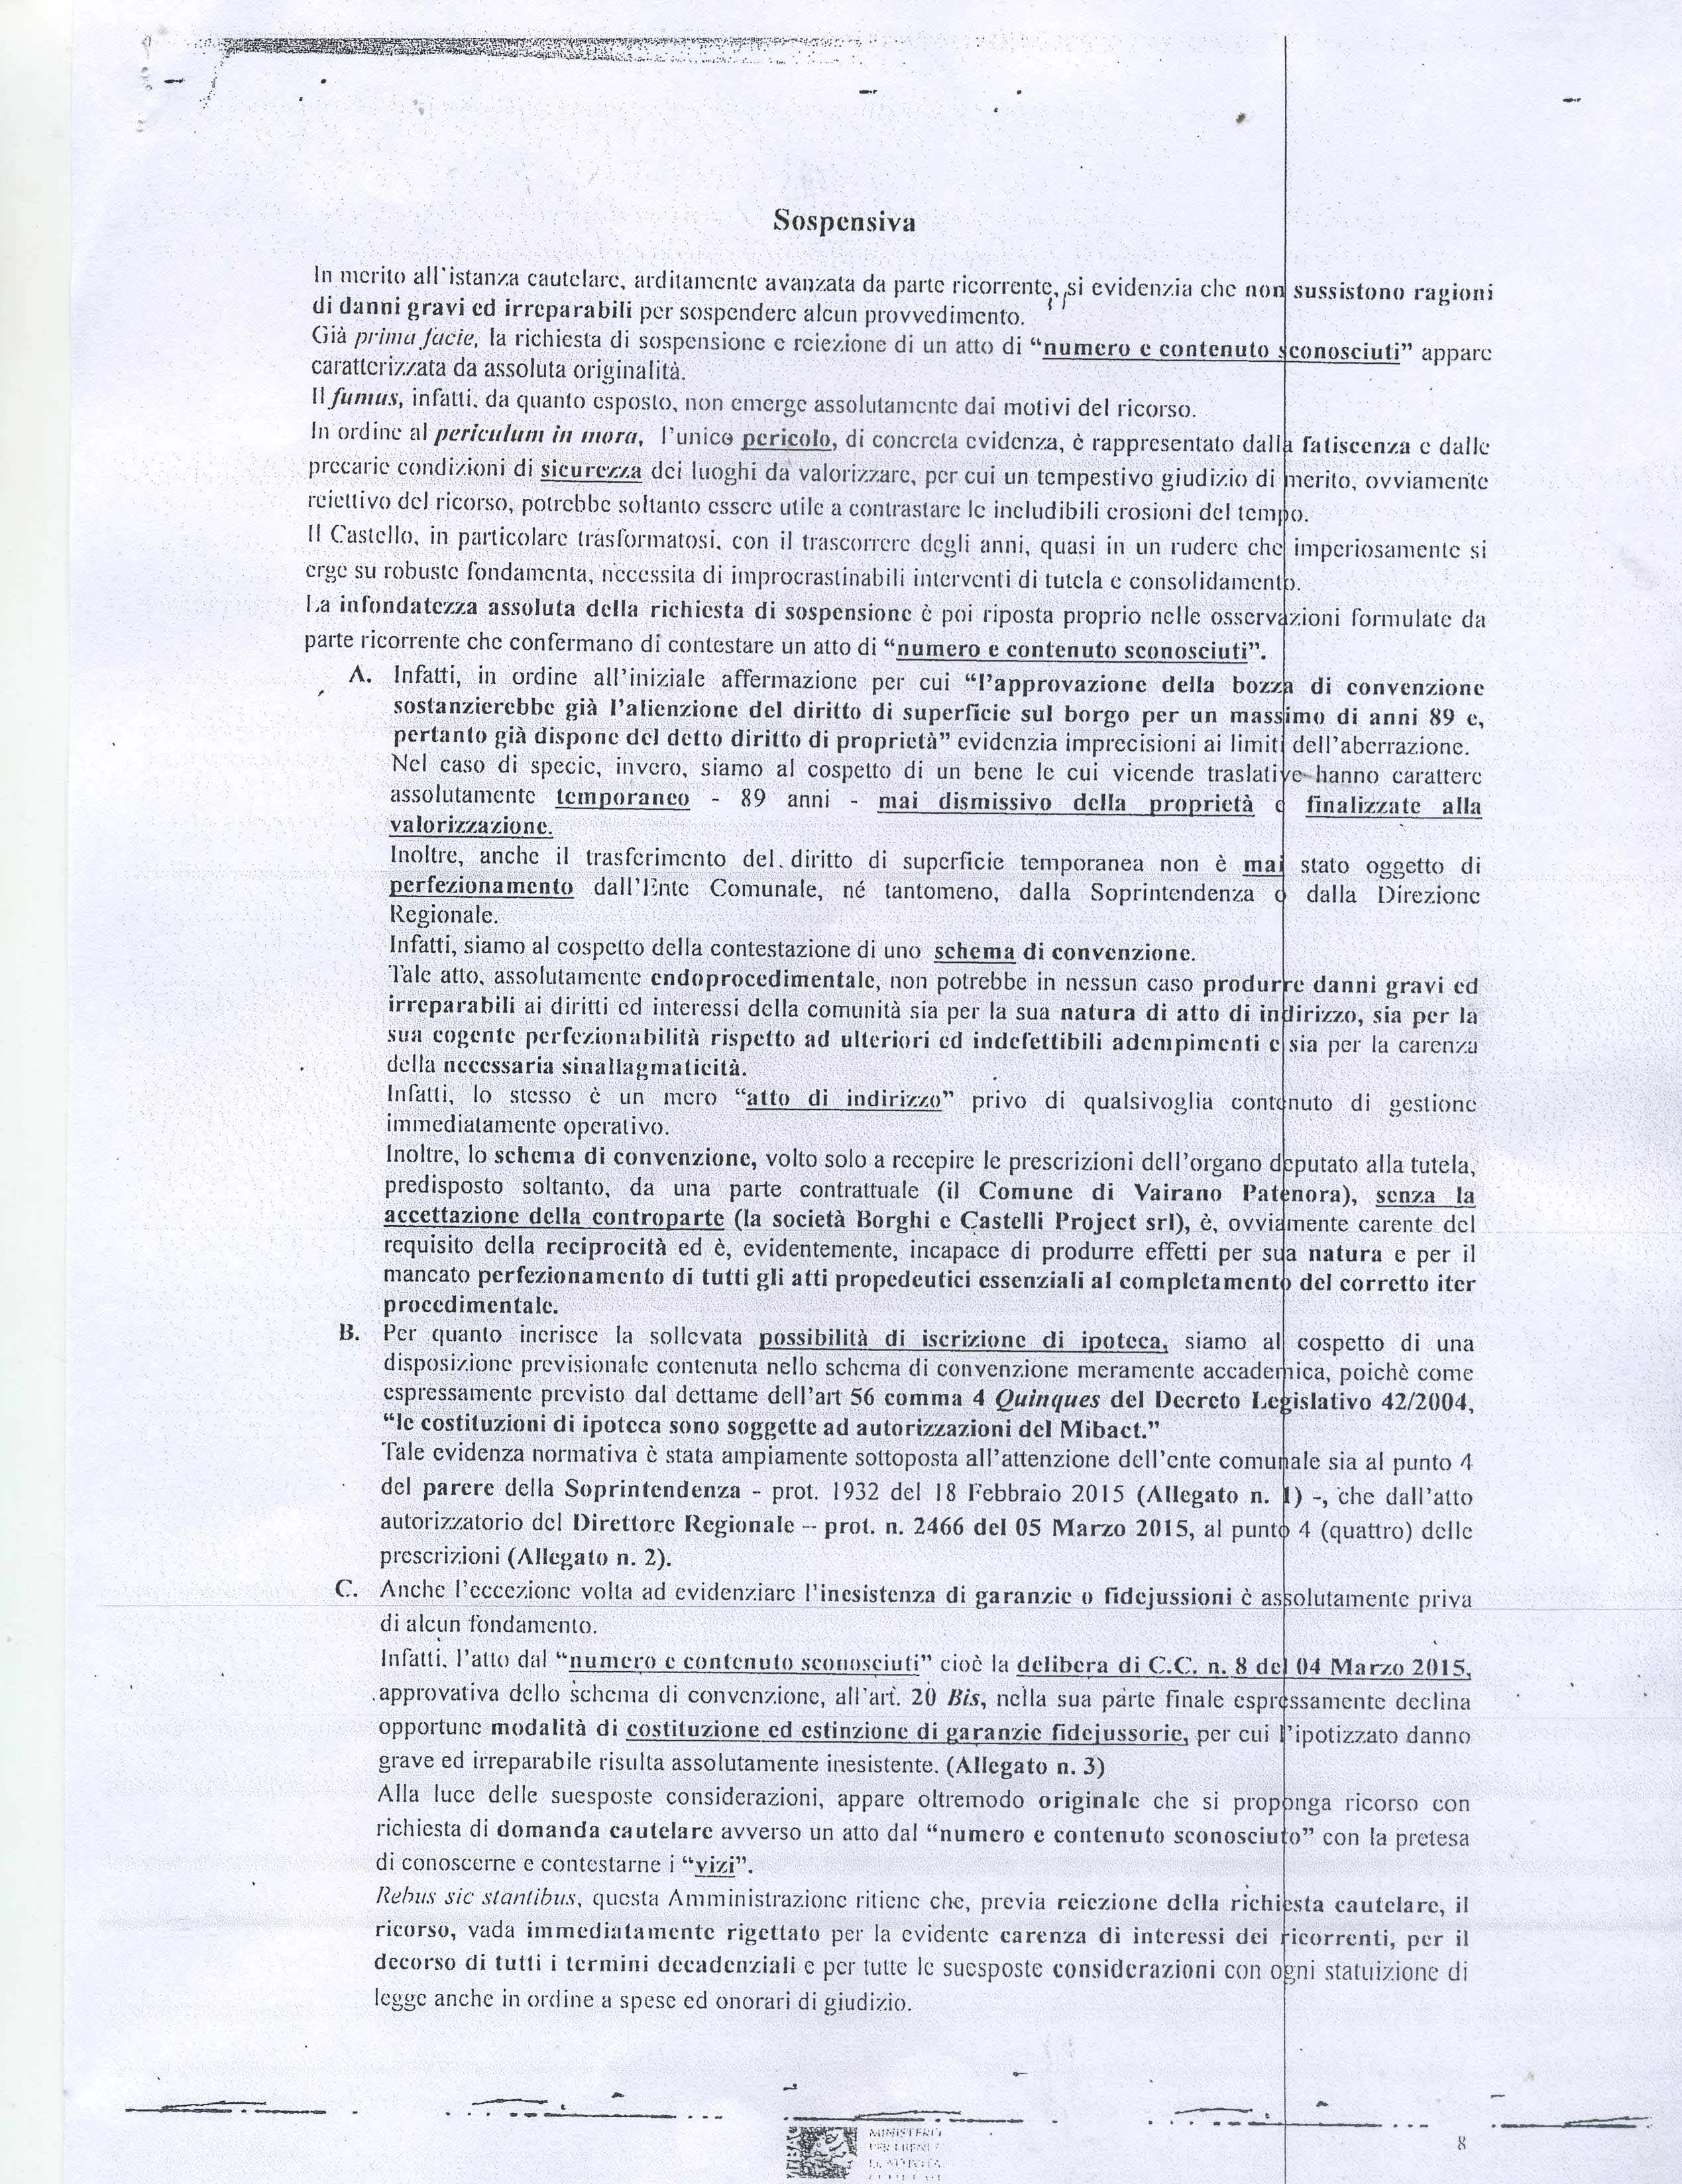 documento-completo-3mibact-su-castello-vairano-patenora_pagina_8